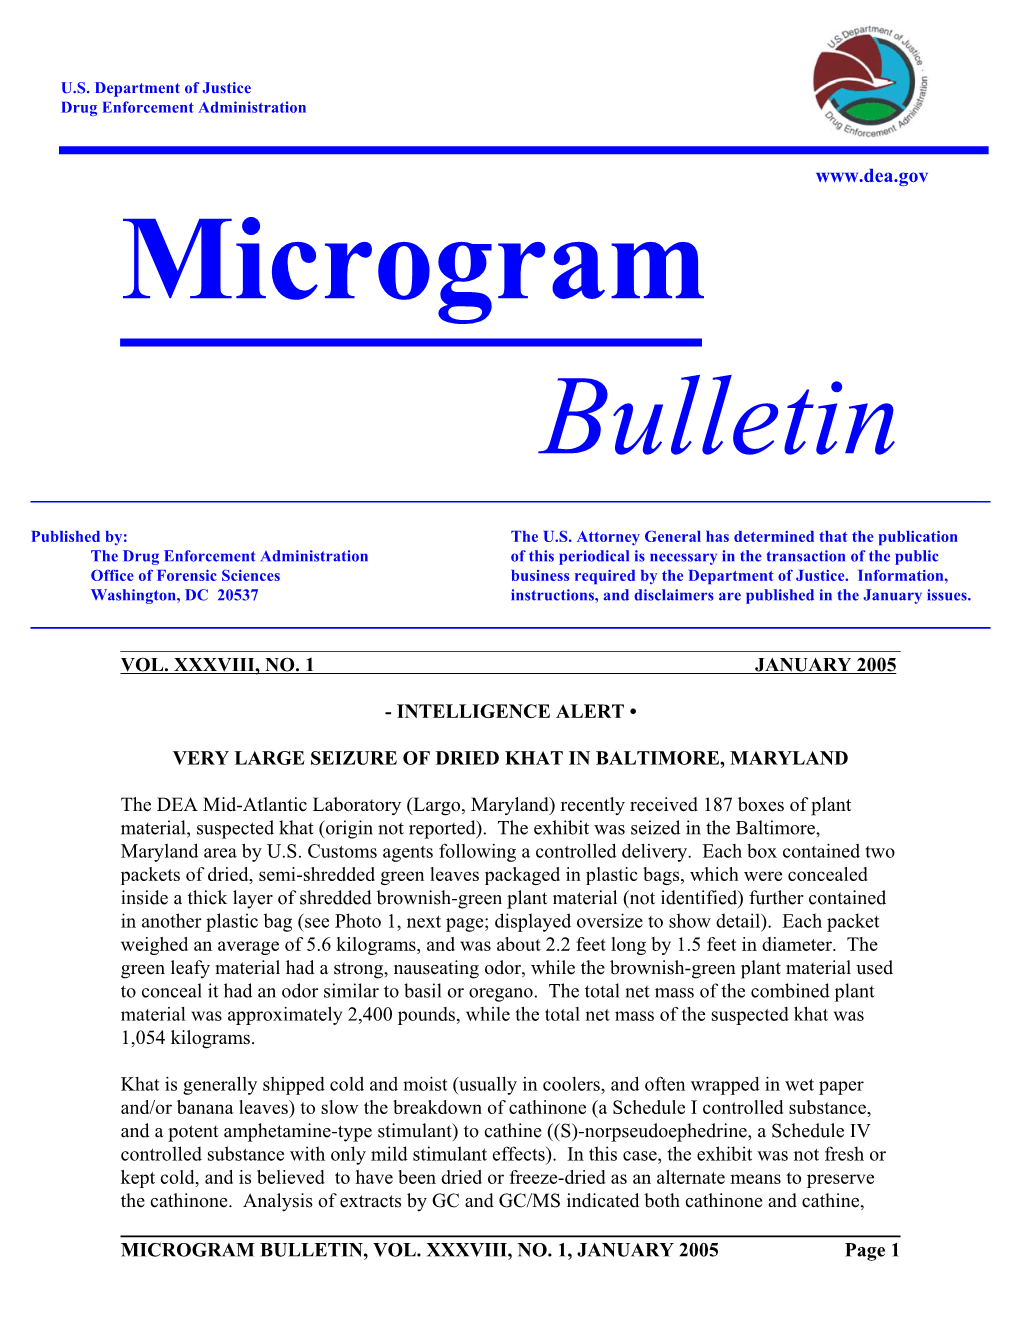 January 2005 Microgram Bulletin, Vol